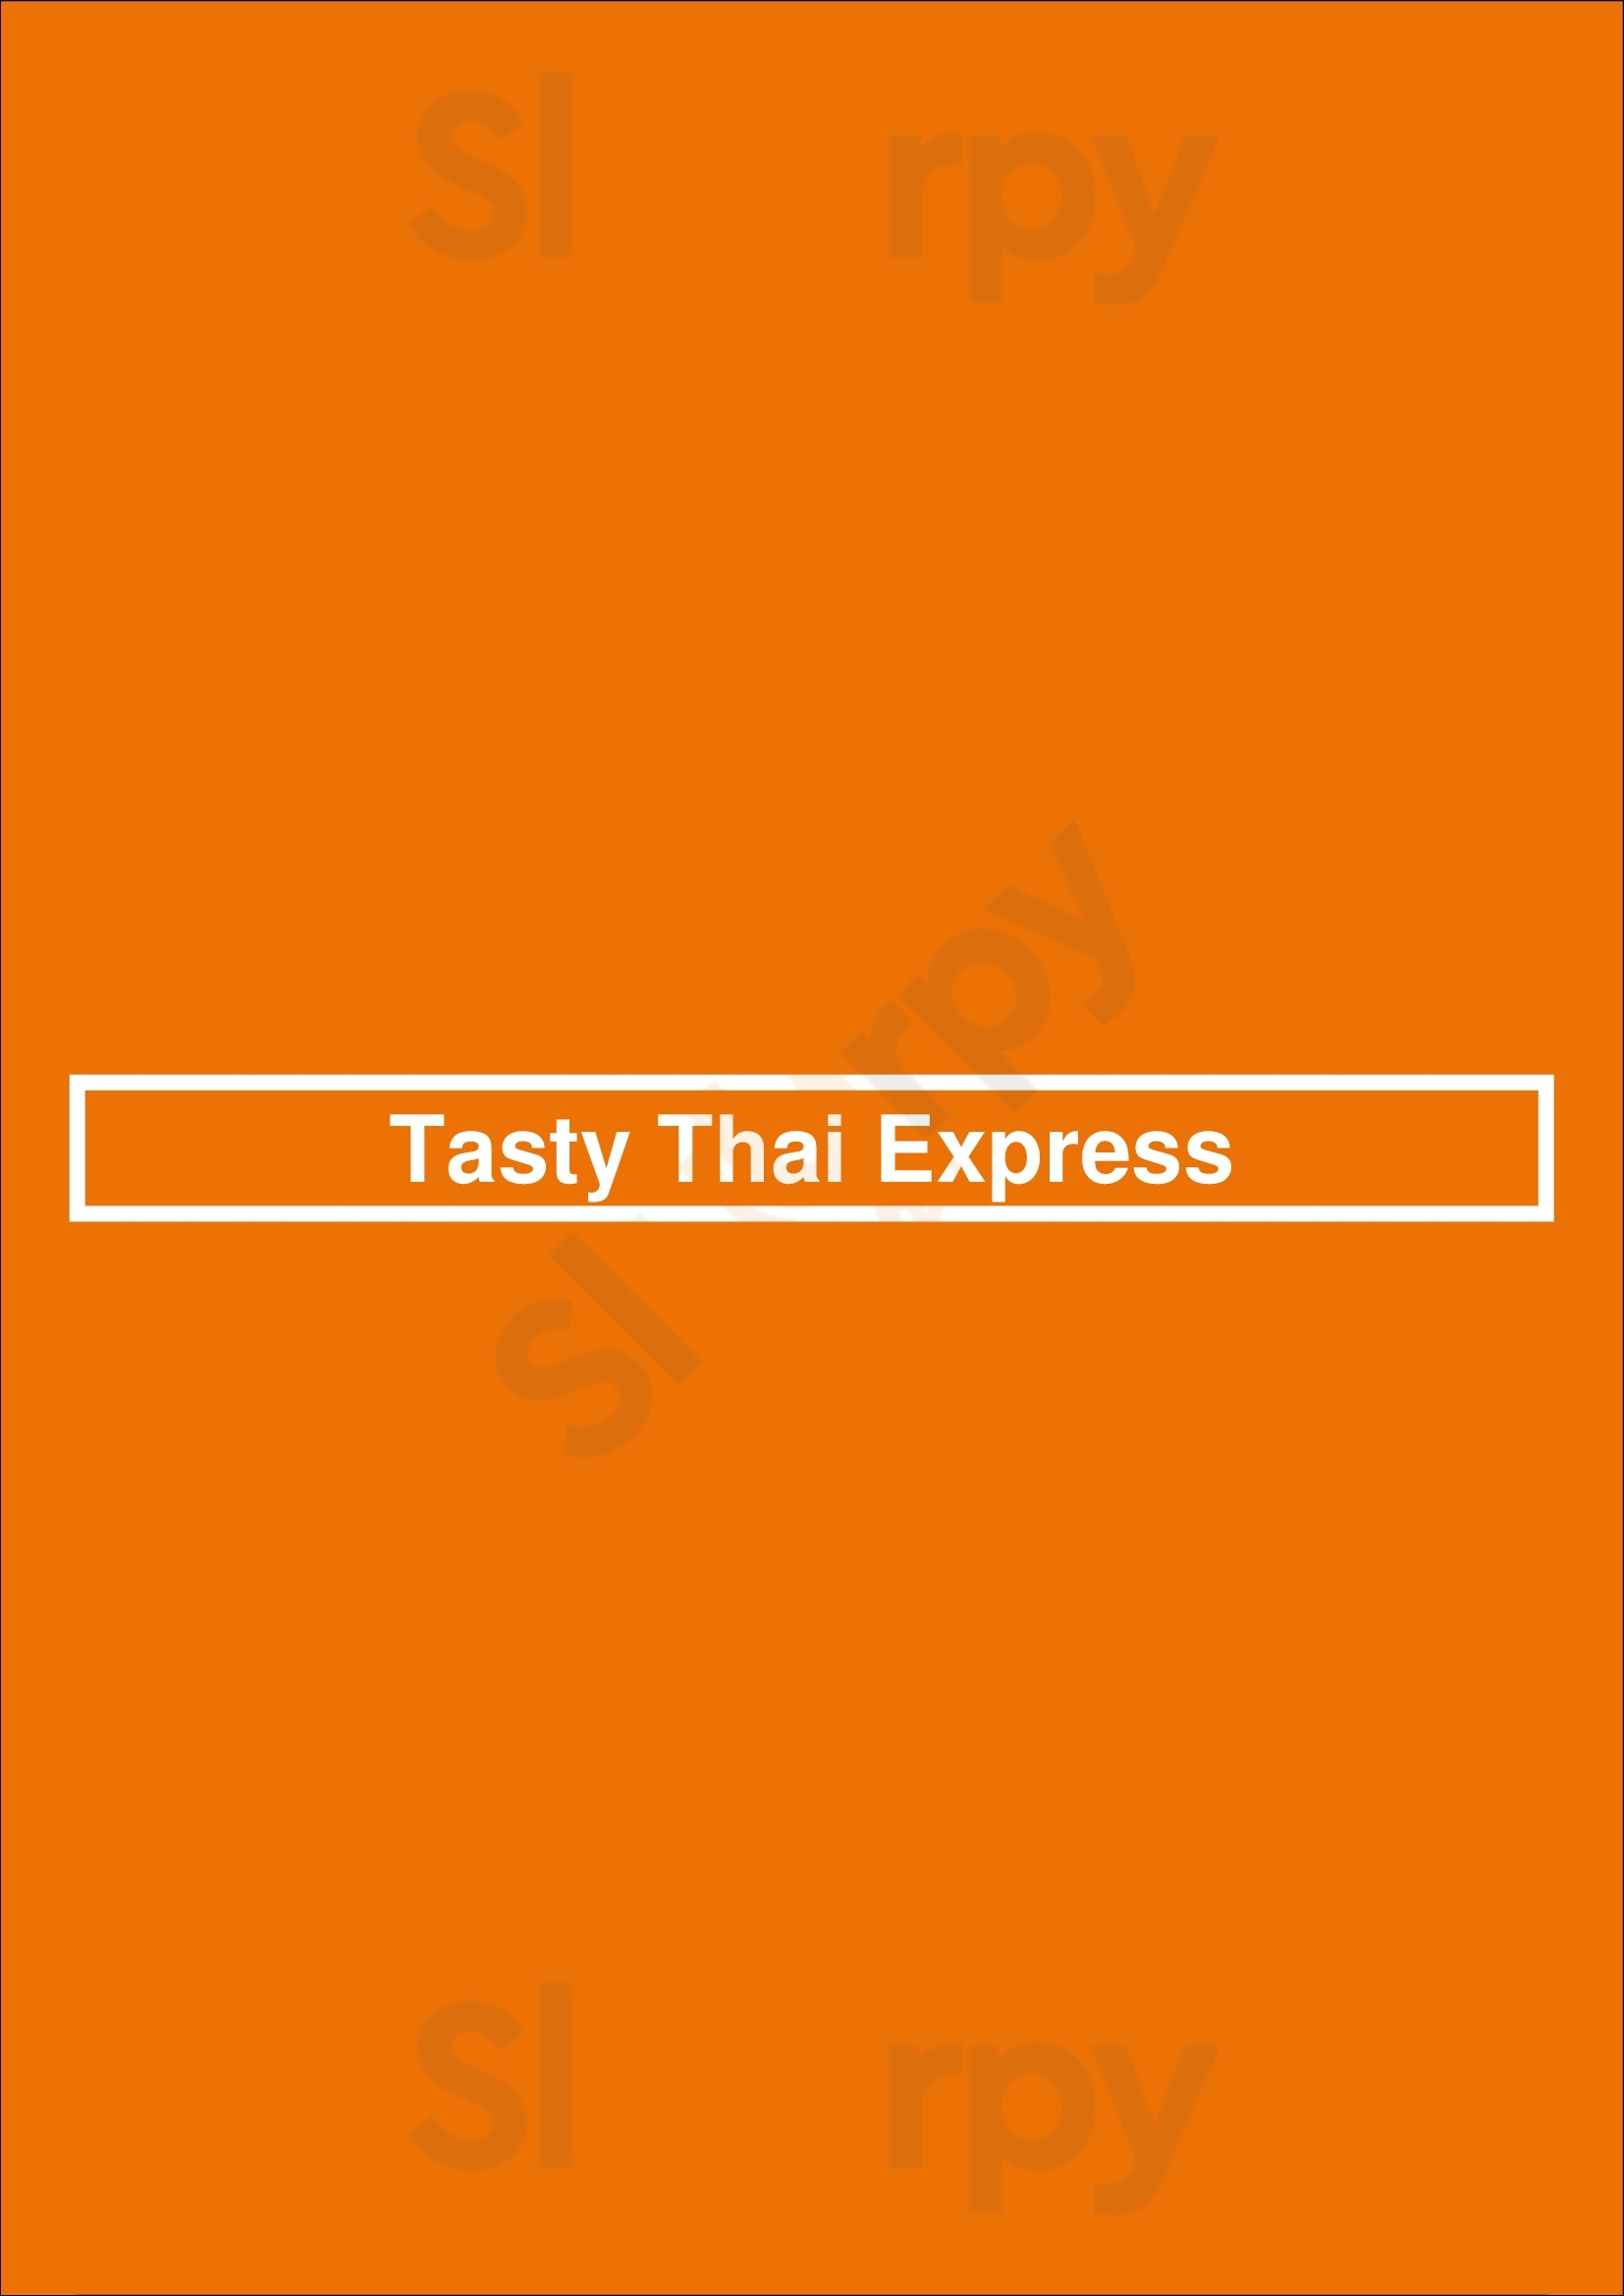 Tasty Thai Express Anvers Menu - 1